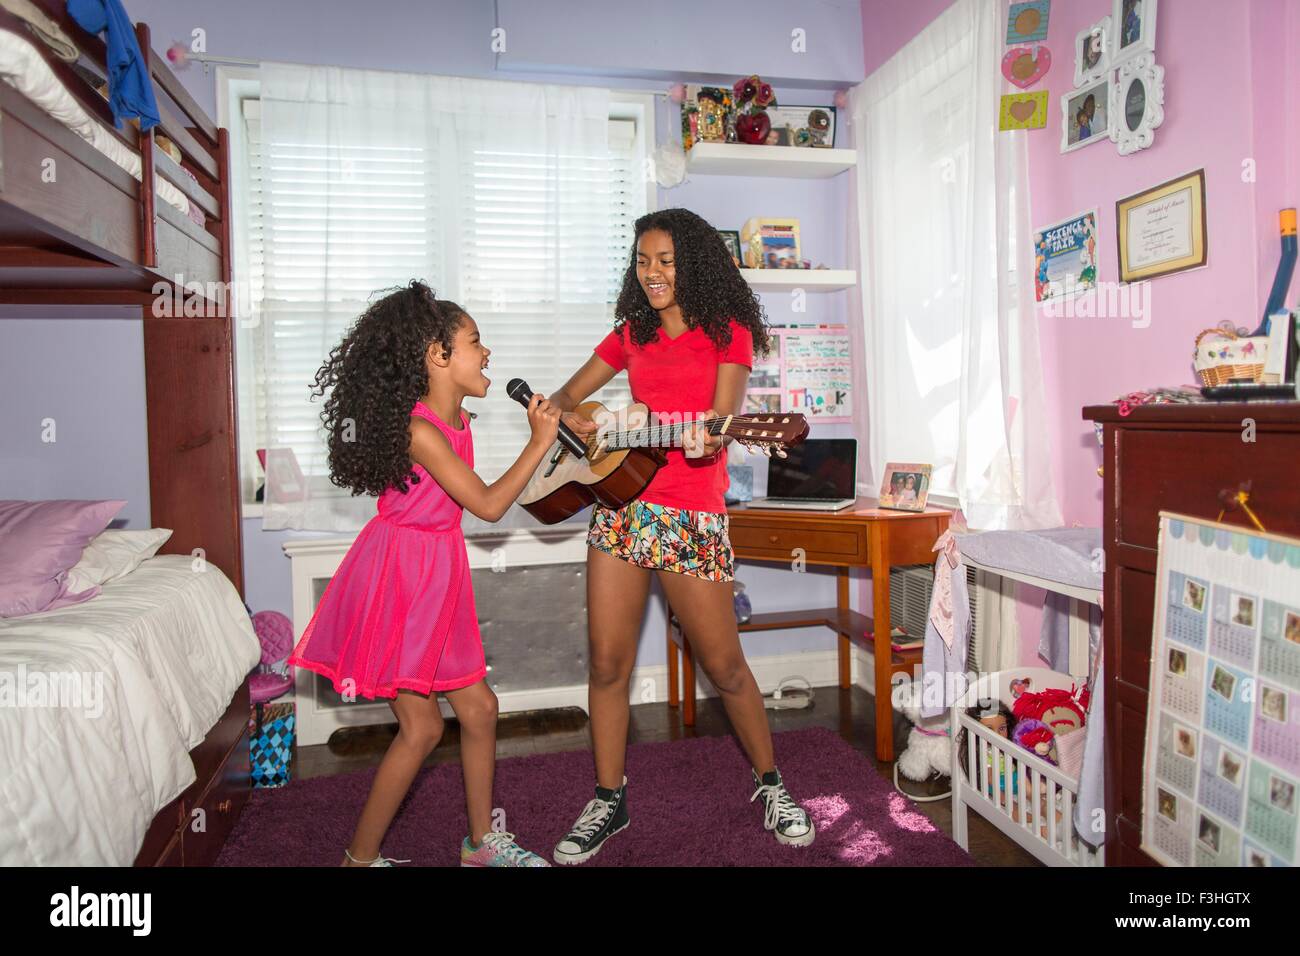 Las niñas en la habitación hacia el micrófono cantando y tocando la guitarra Foto de stock